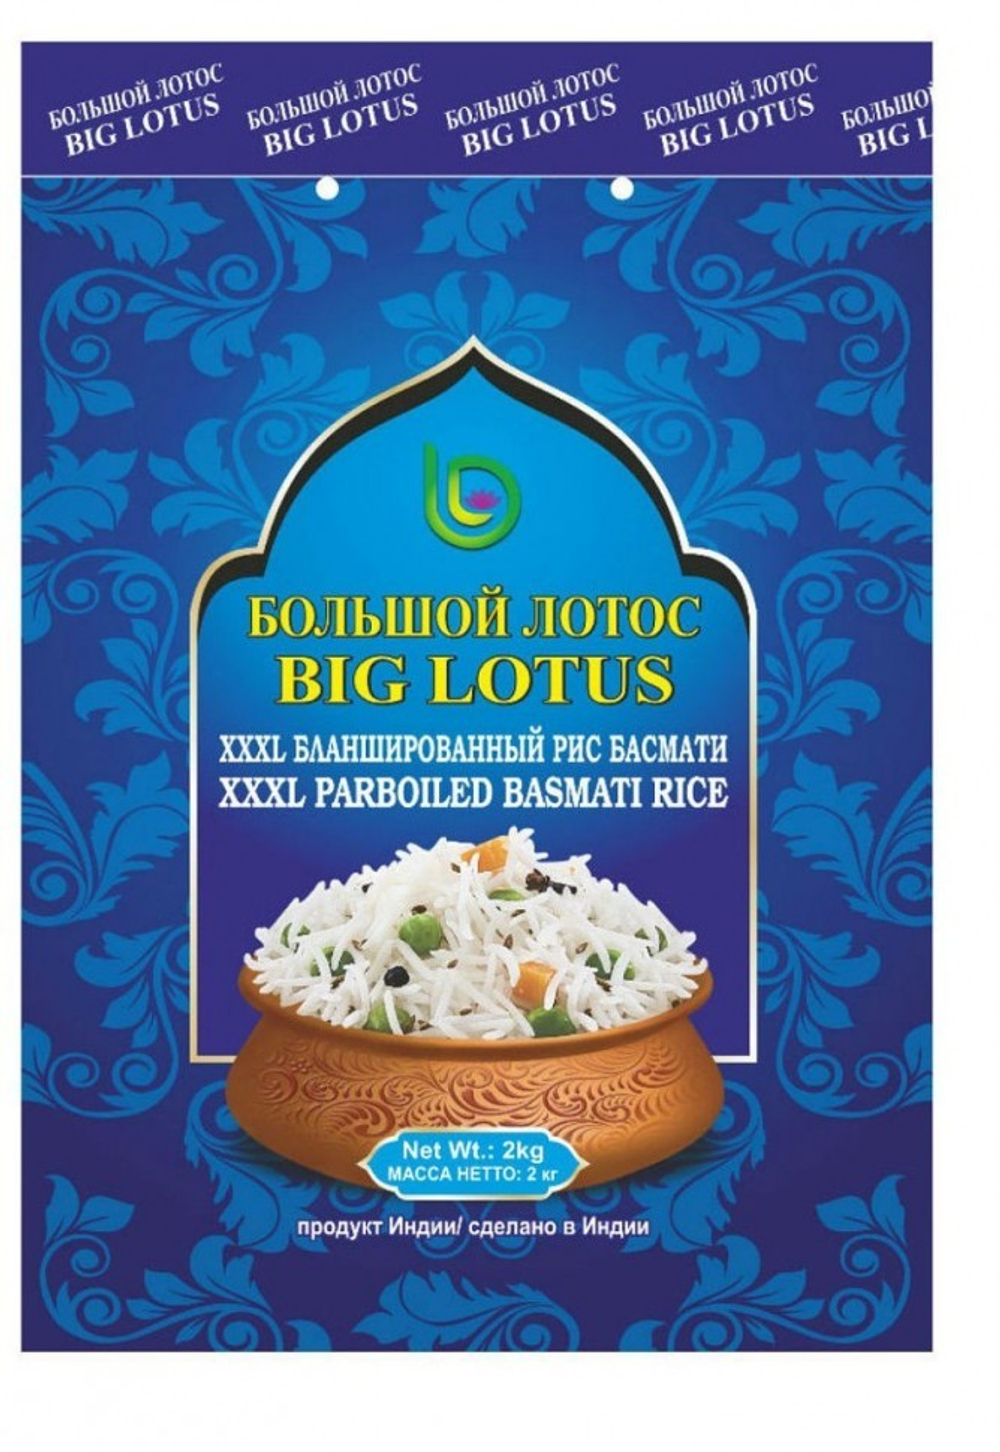 Рис Басмати Бланшированный Big Lotos Parboiled Basmati Rice 2 кг